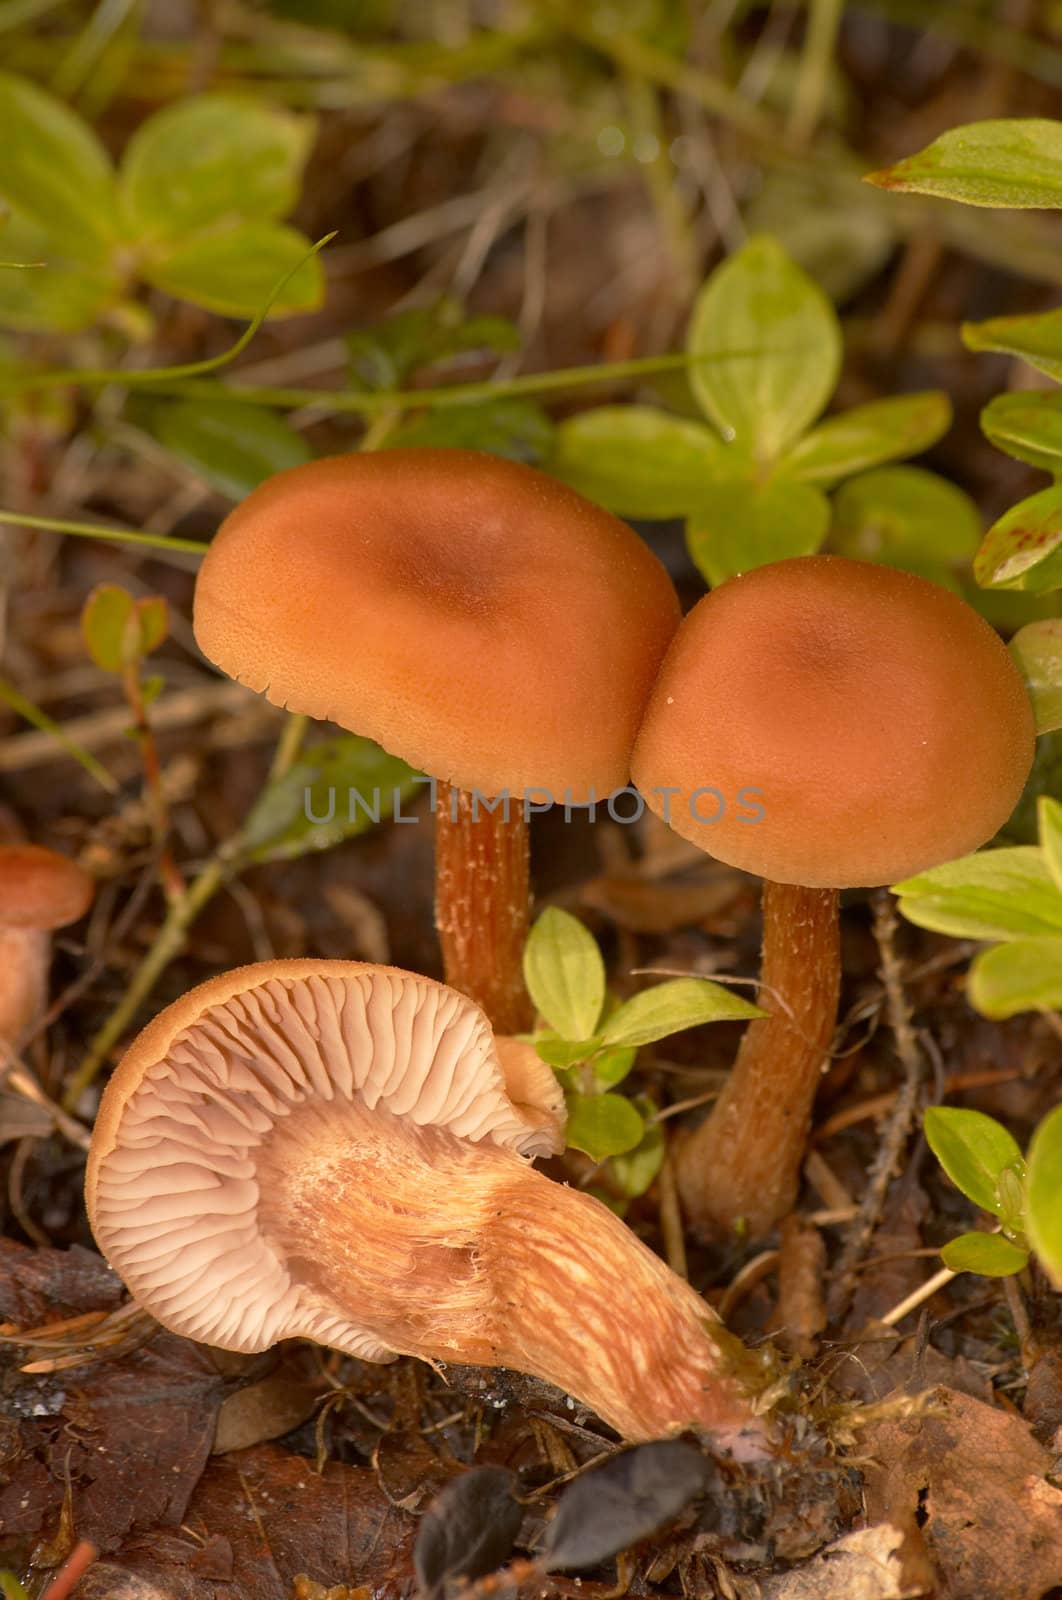 Some brown edible mushrooms grow among a moss